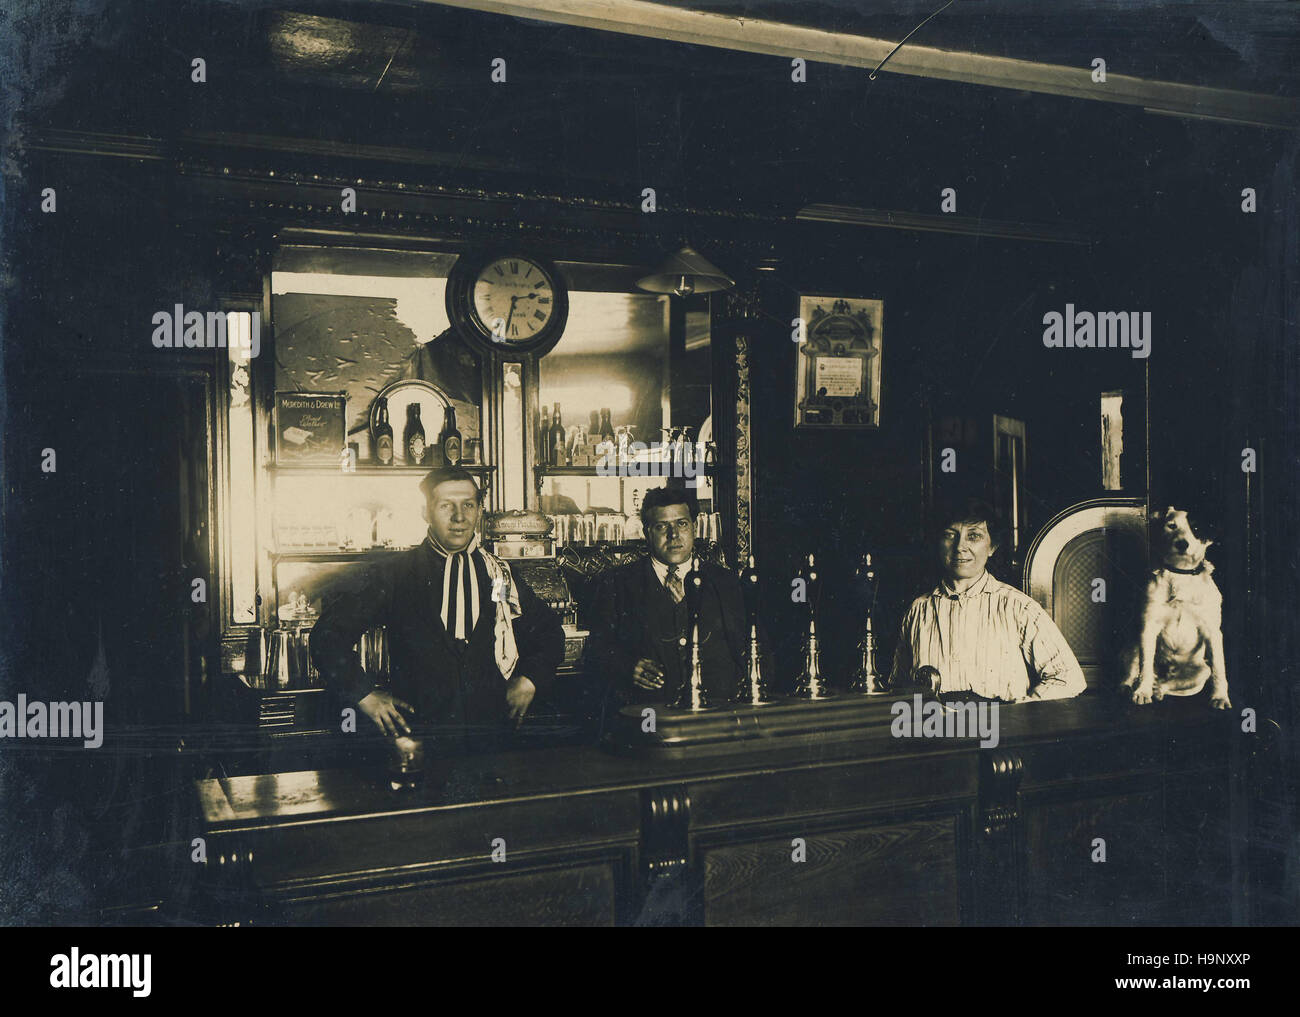 Historisches Archiv Bild der Gastwirtschaft Interieur. Kitcheners Arme, Windsor. c1920. Stockfoto